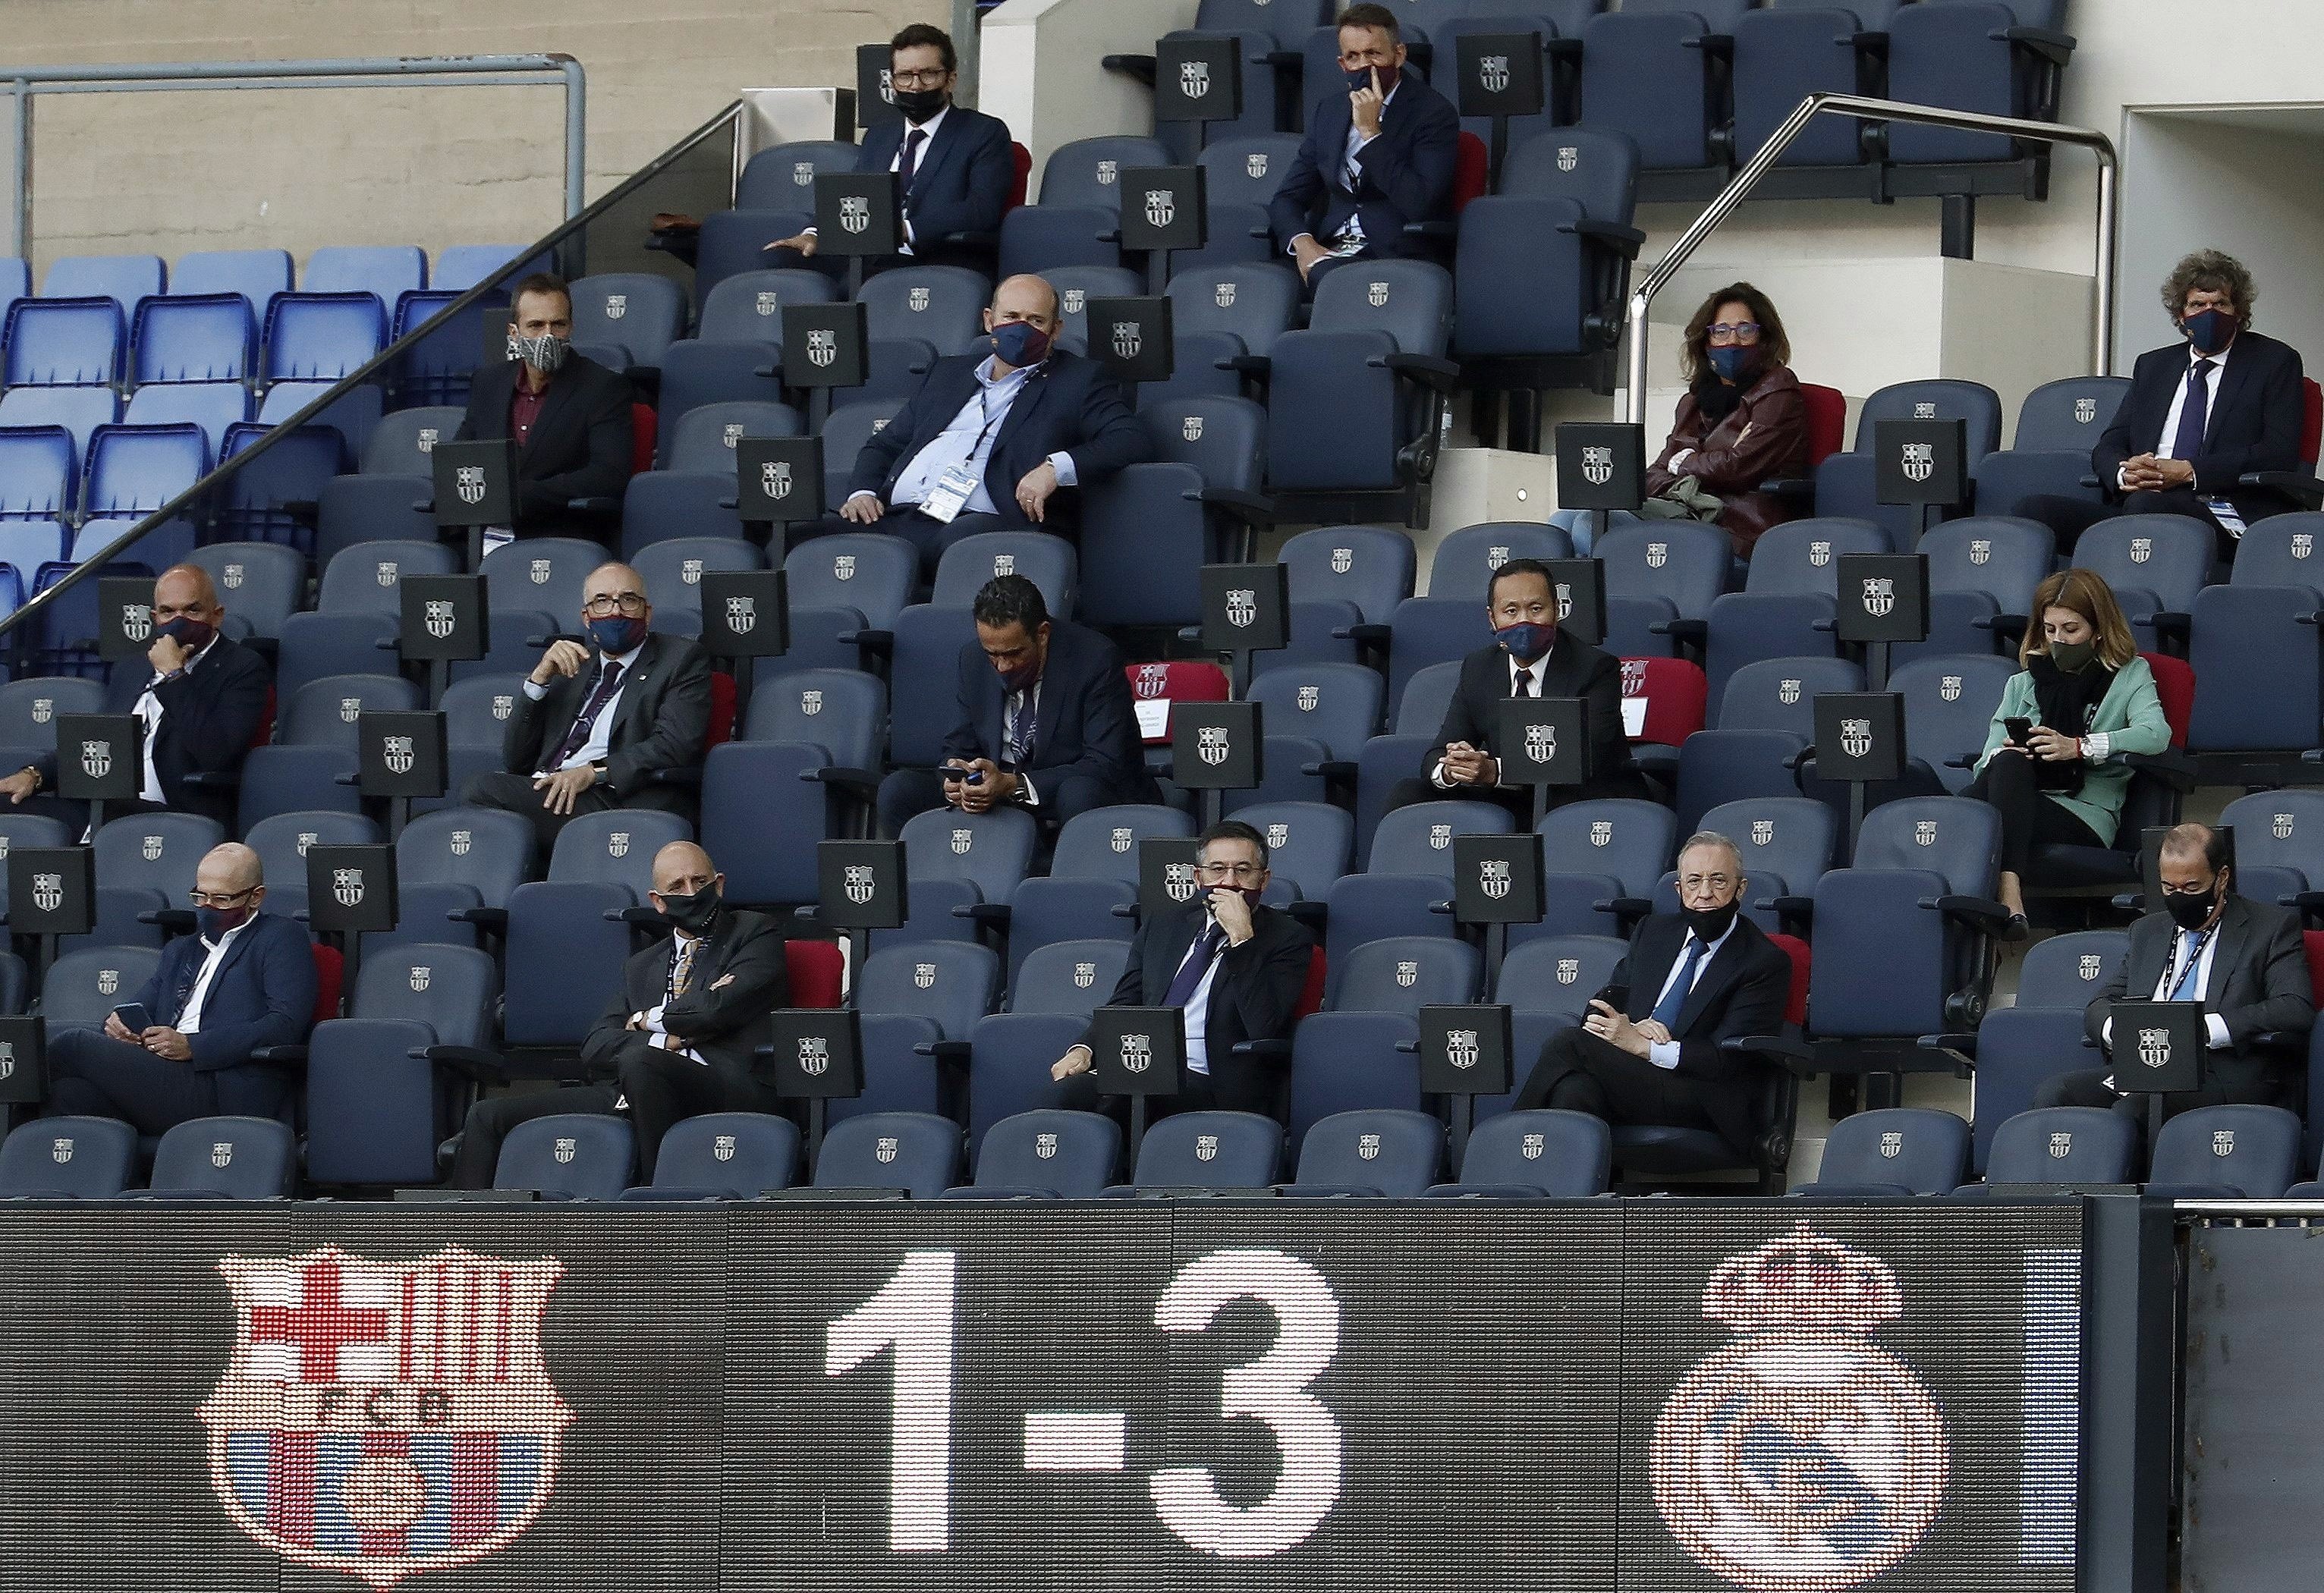 El futur del Barça, en joc: dimissió de Bartomeu i la junta o referèndum